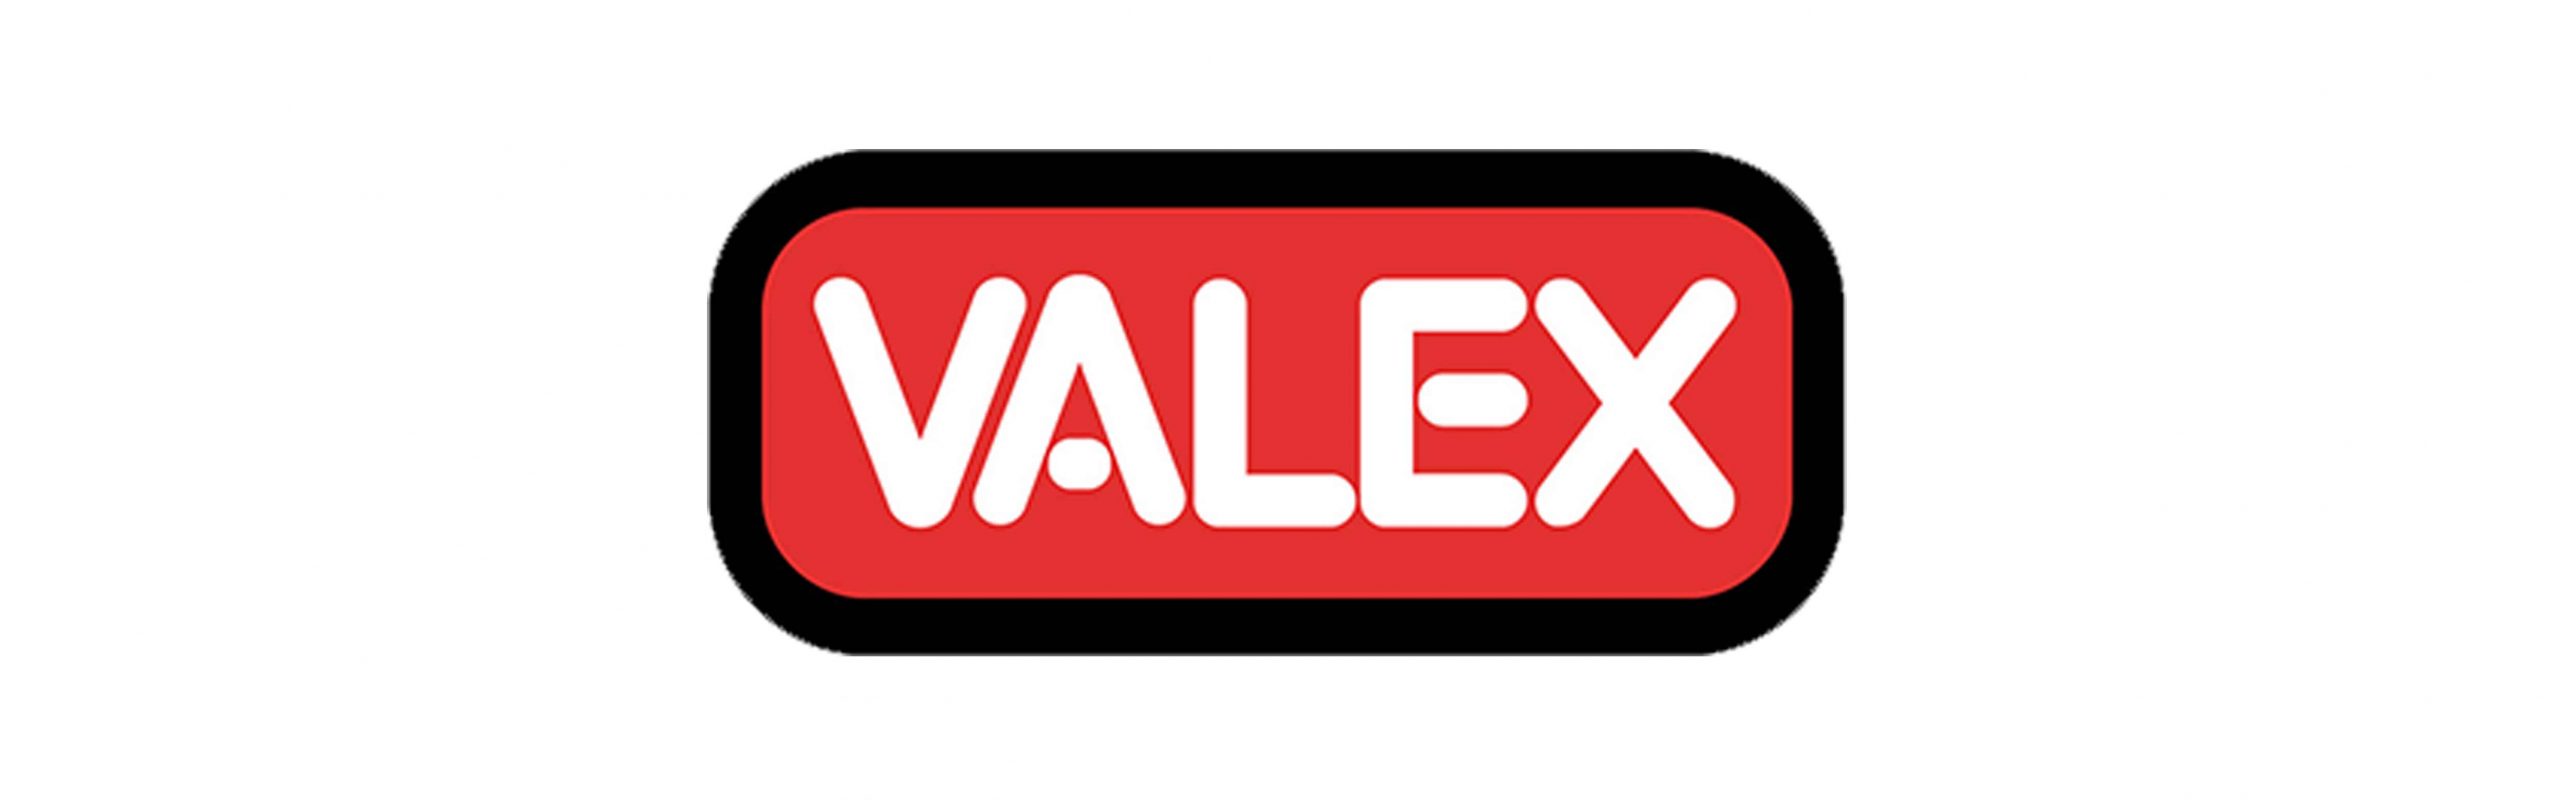 VALEX_logo